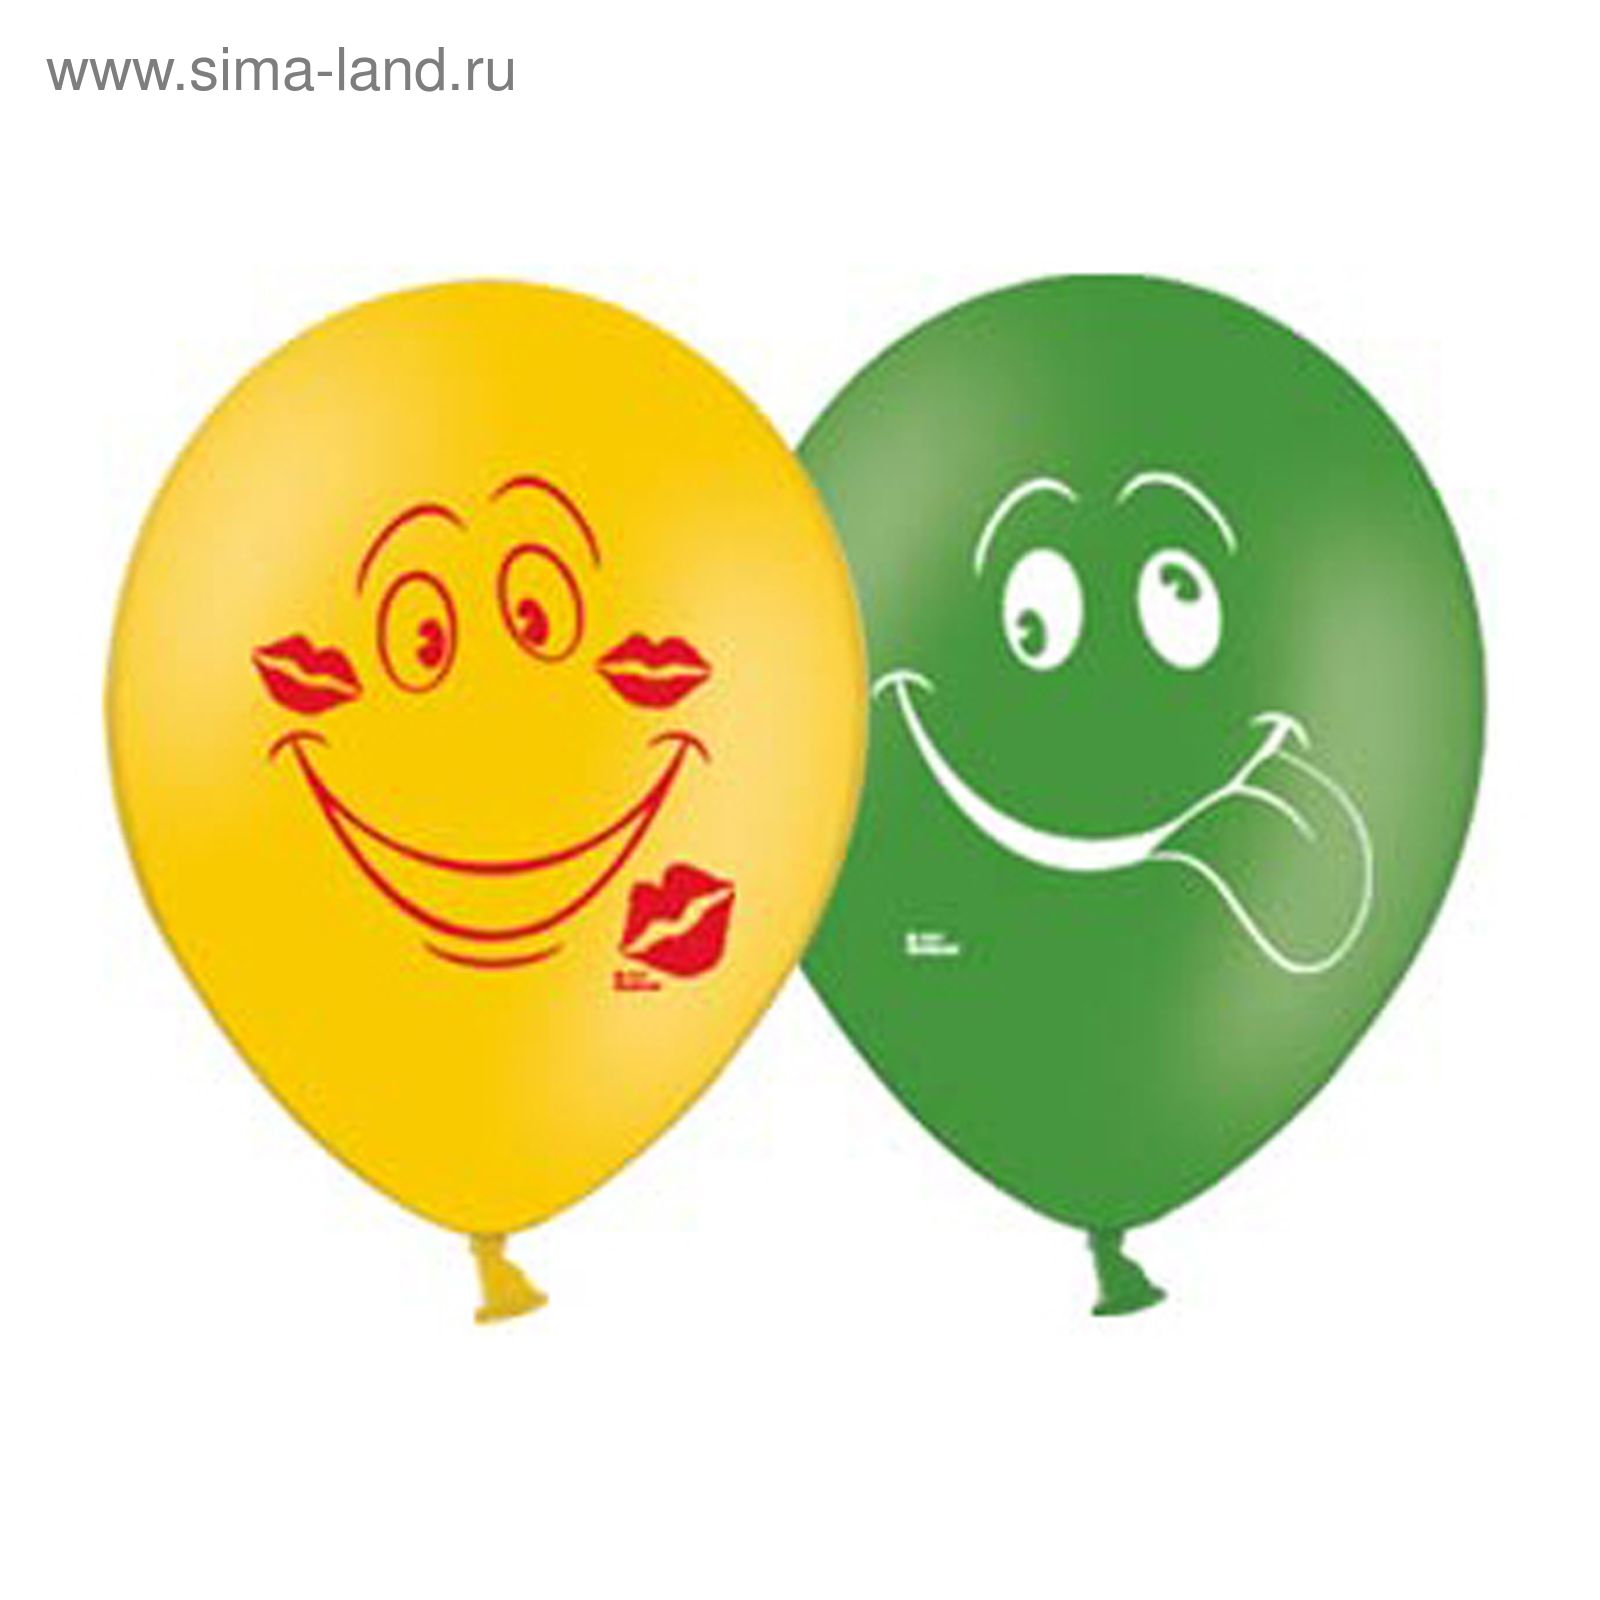 Улыбка шаров. Веселые шары. Воздушный шарик с улыбкой. Веселые воздушные шарики. Воздушные шарики улыбаются.